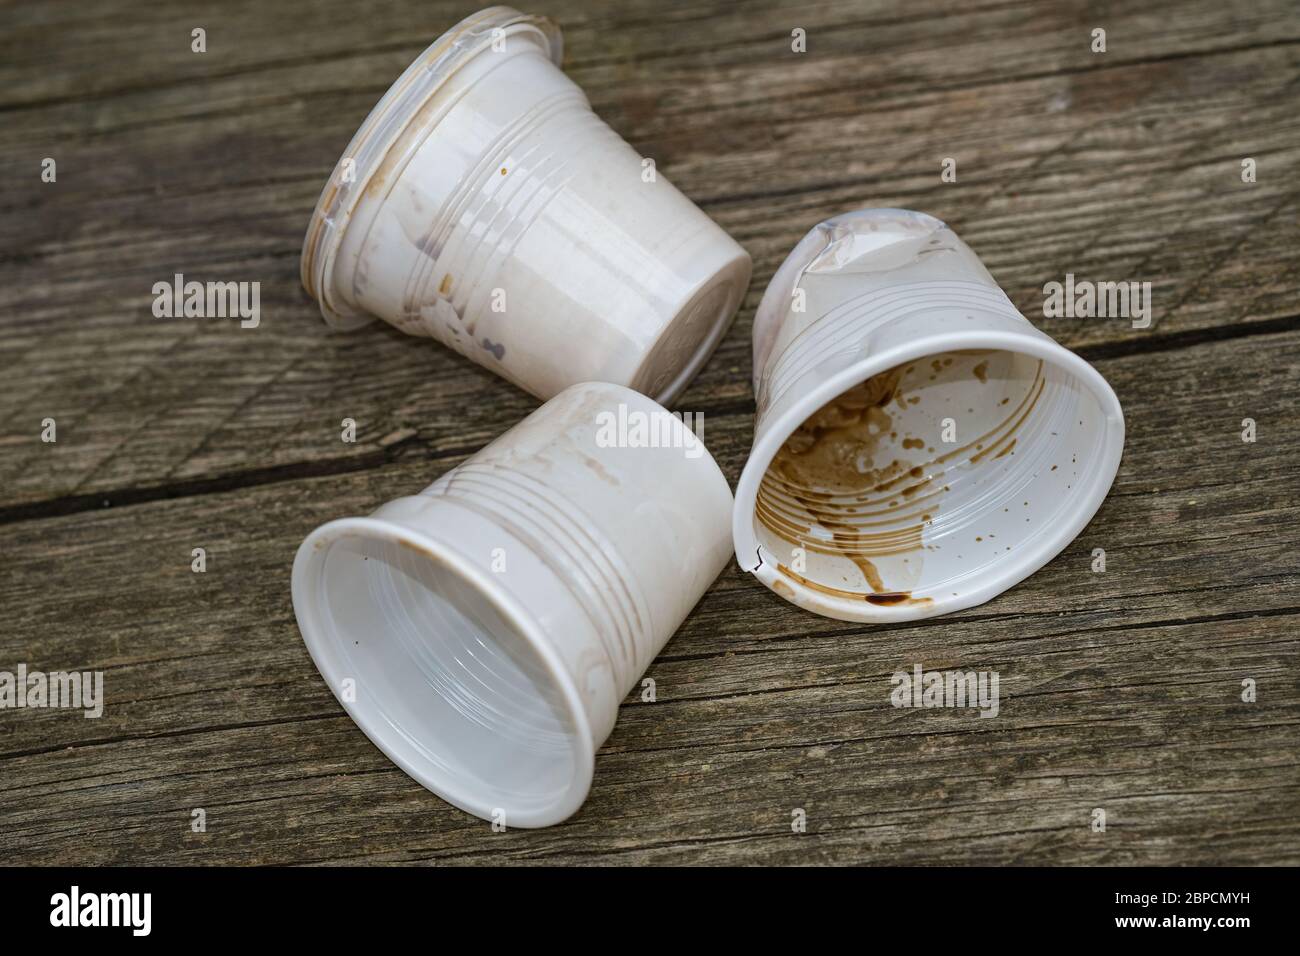 Saque las tazas usadas de café de plástico desechadas, la contaminación desechable sucia Foto de stock